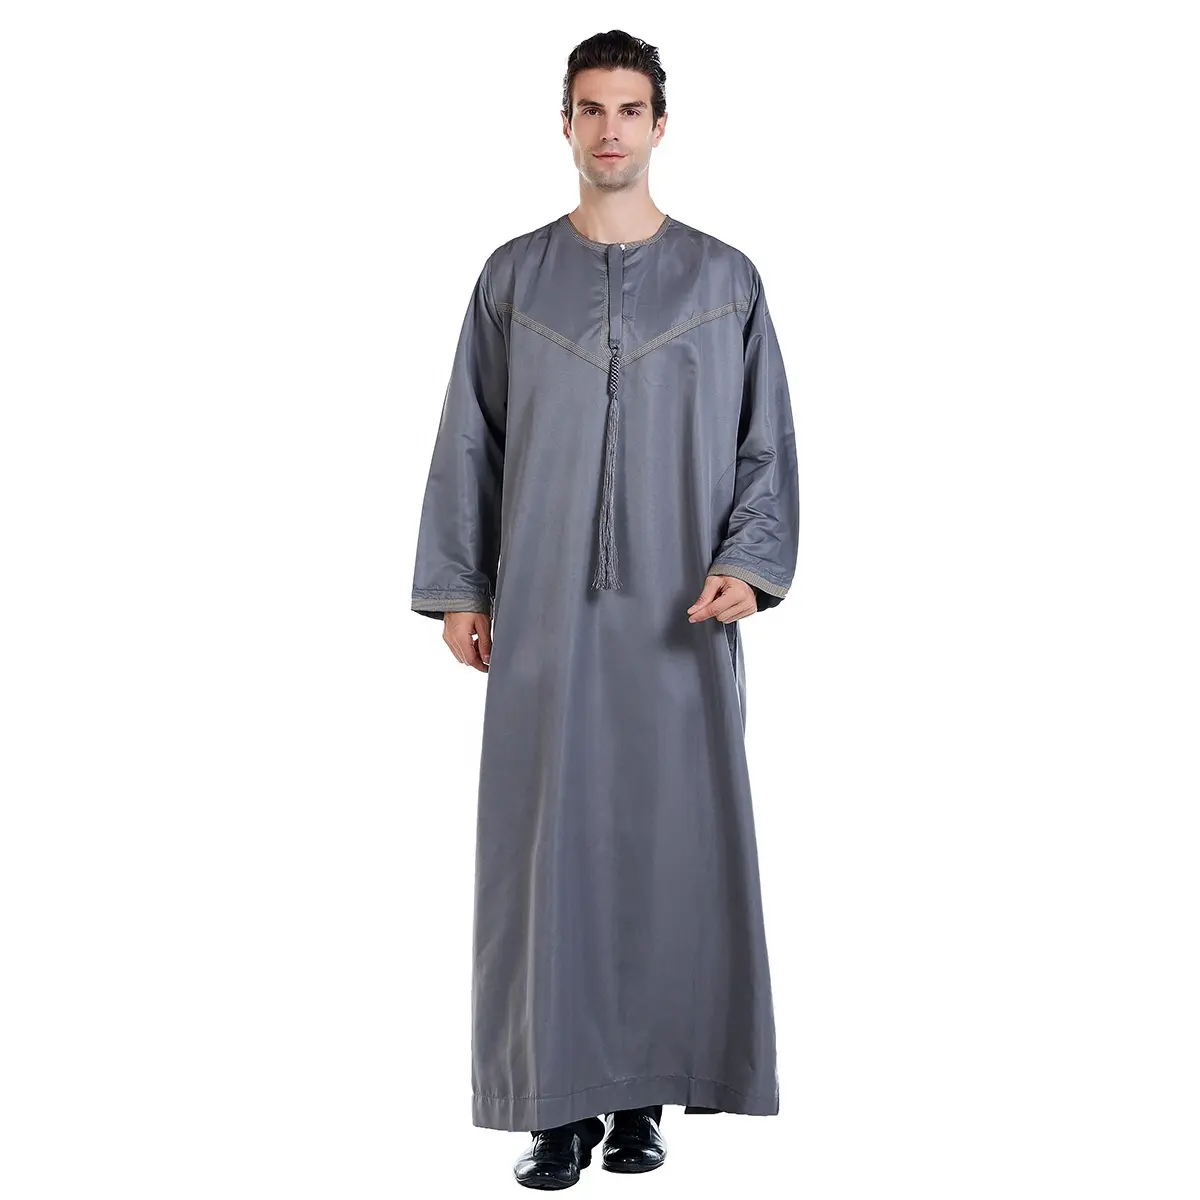 イスラムカフタン黒人男性ジュバトーブイスラム教徒ロングローブ着物サウジアラビアイスラム教徒プレーンウェア中東男性アバヤ民族服